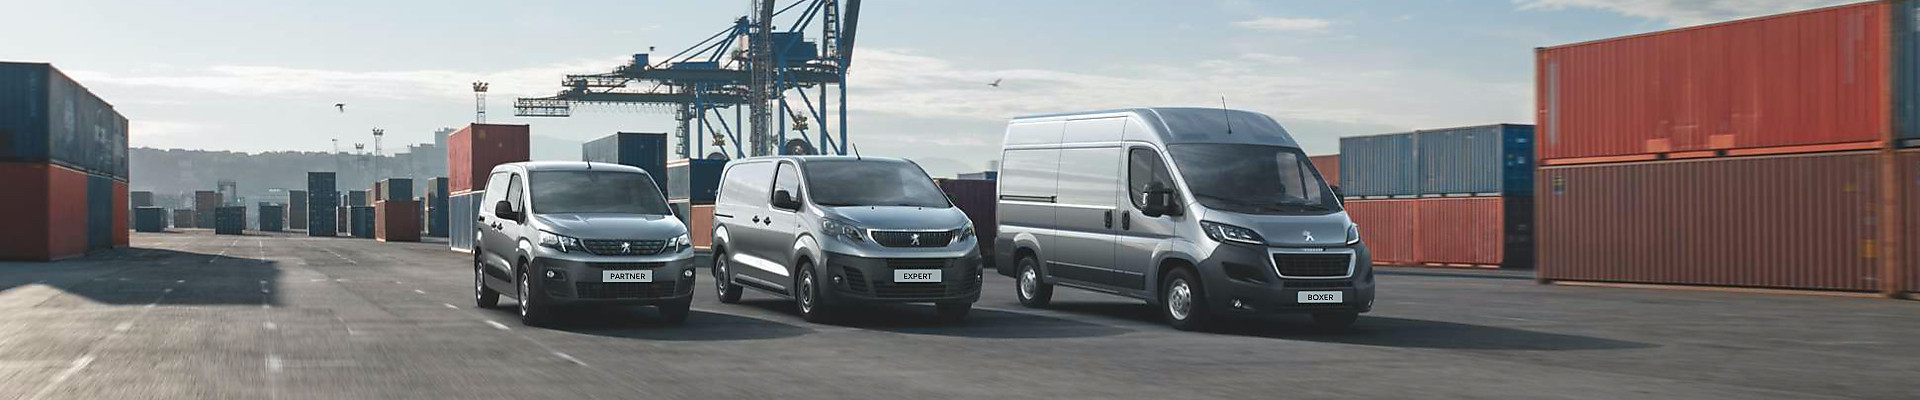 Elevator Karakter indsats Buying Our Vans | PEUGEOT Van Leasing & Contract Hire | PEUGEOT UK